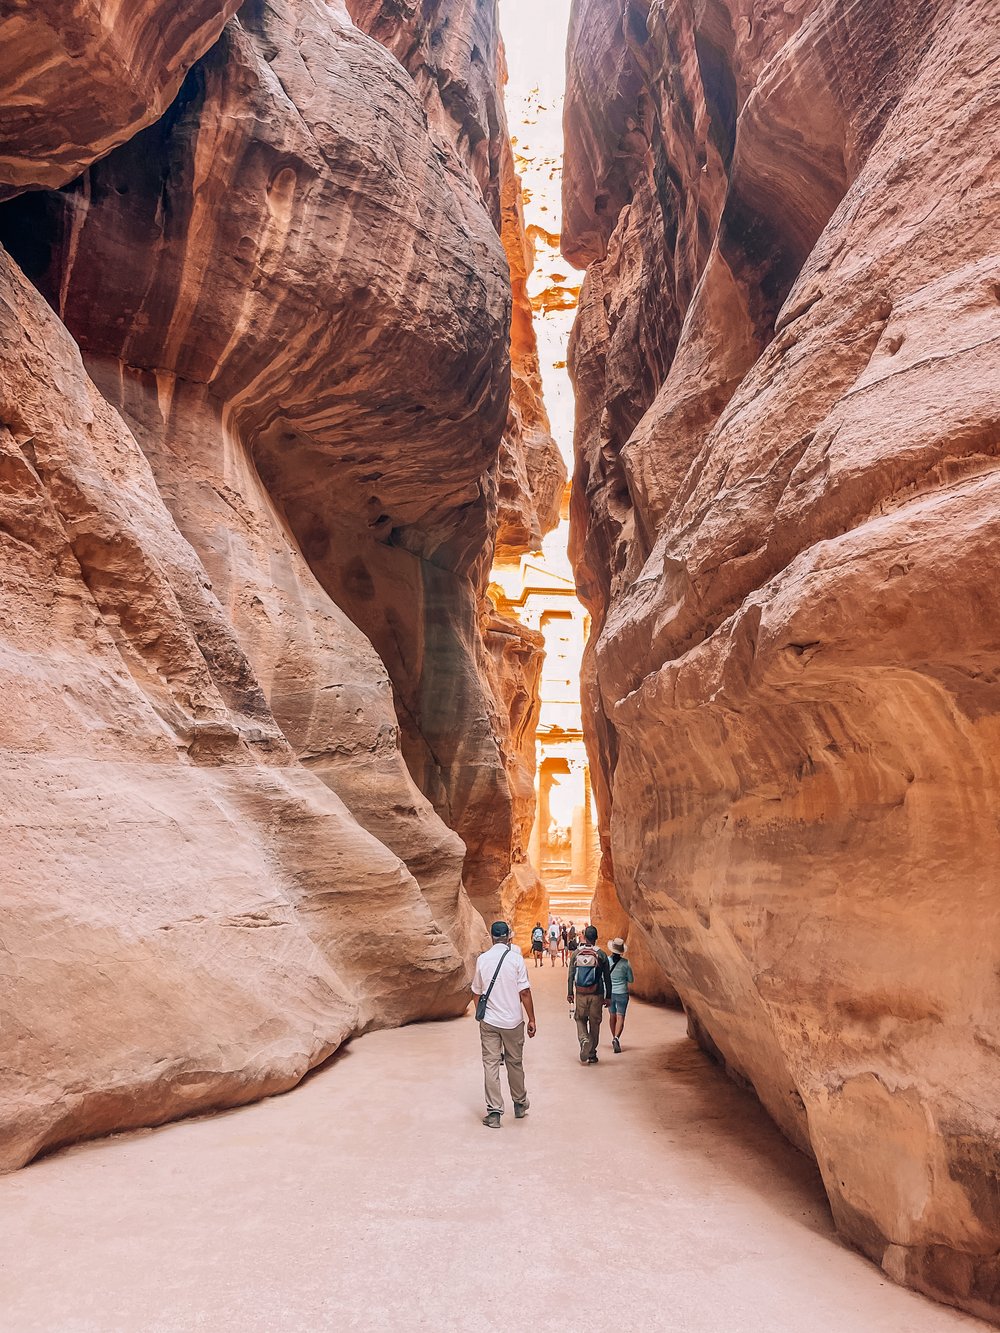  Travel Guide to Jordan - Petra 